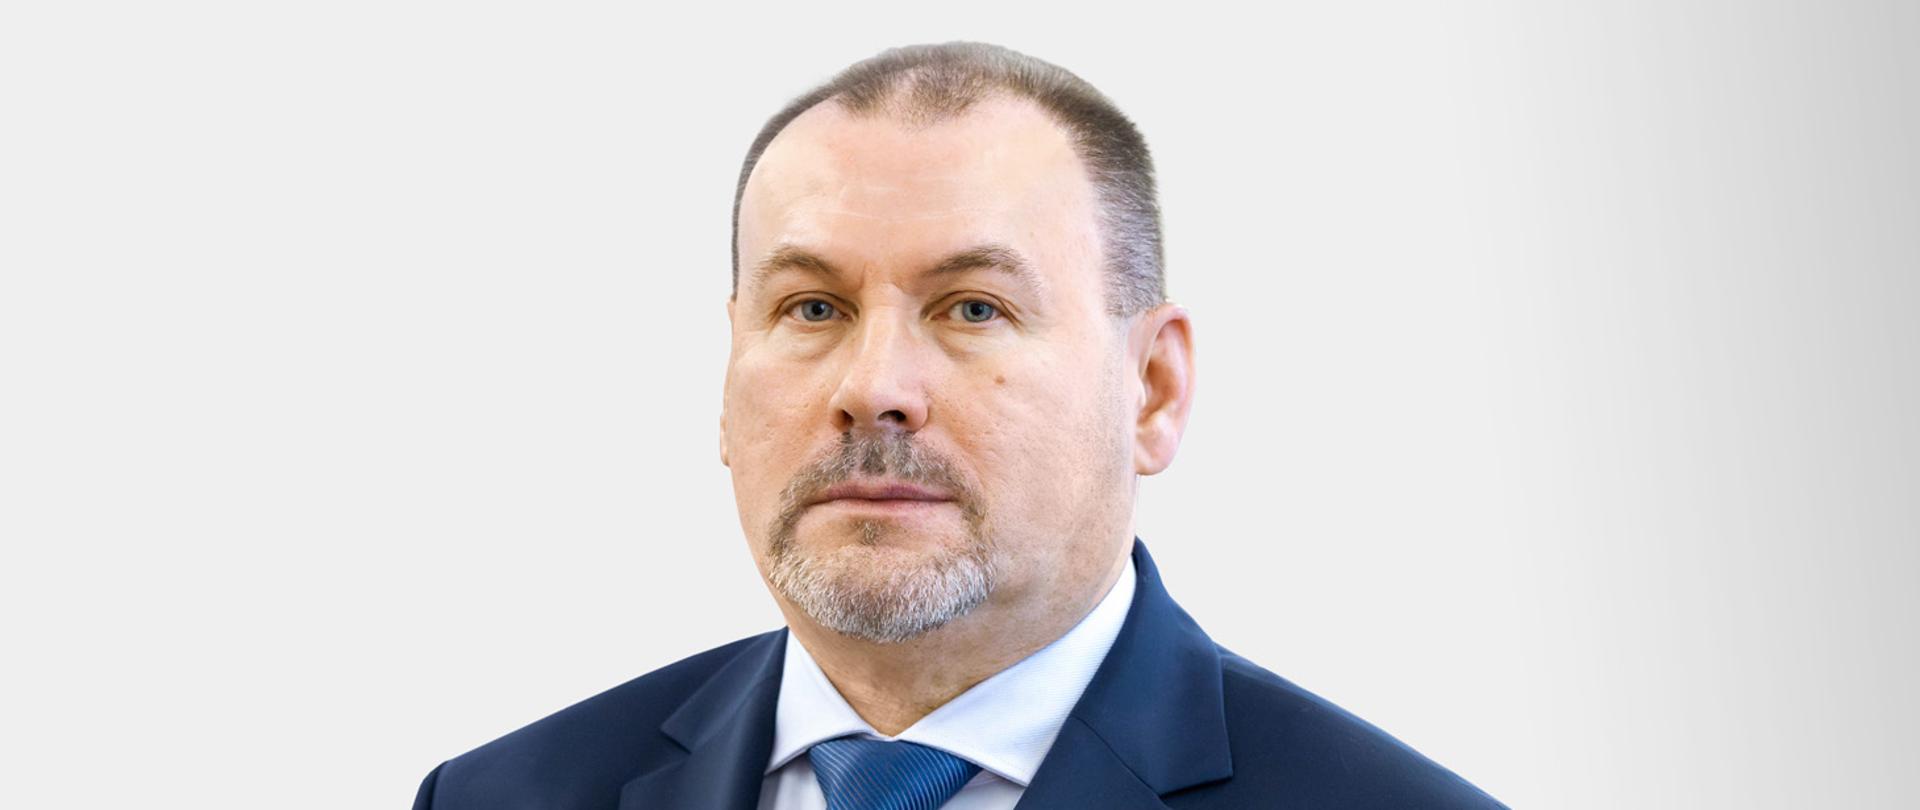 Podsekretarz stanu, zastępca szefa KAS Zbigniew Stawicki